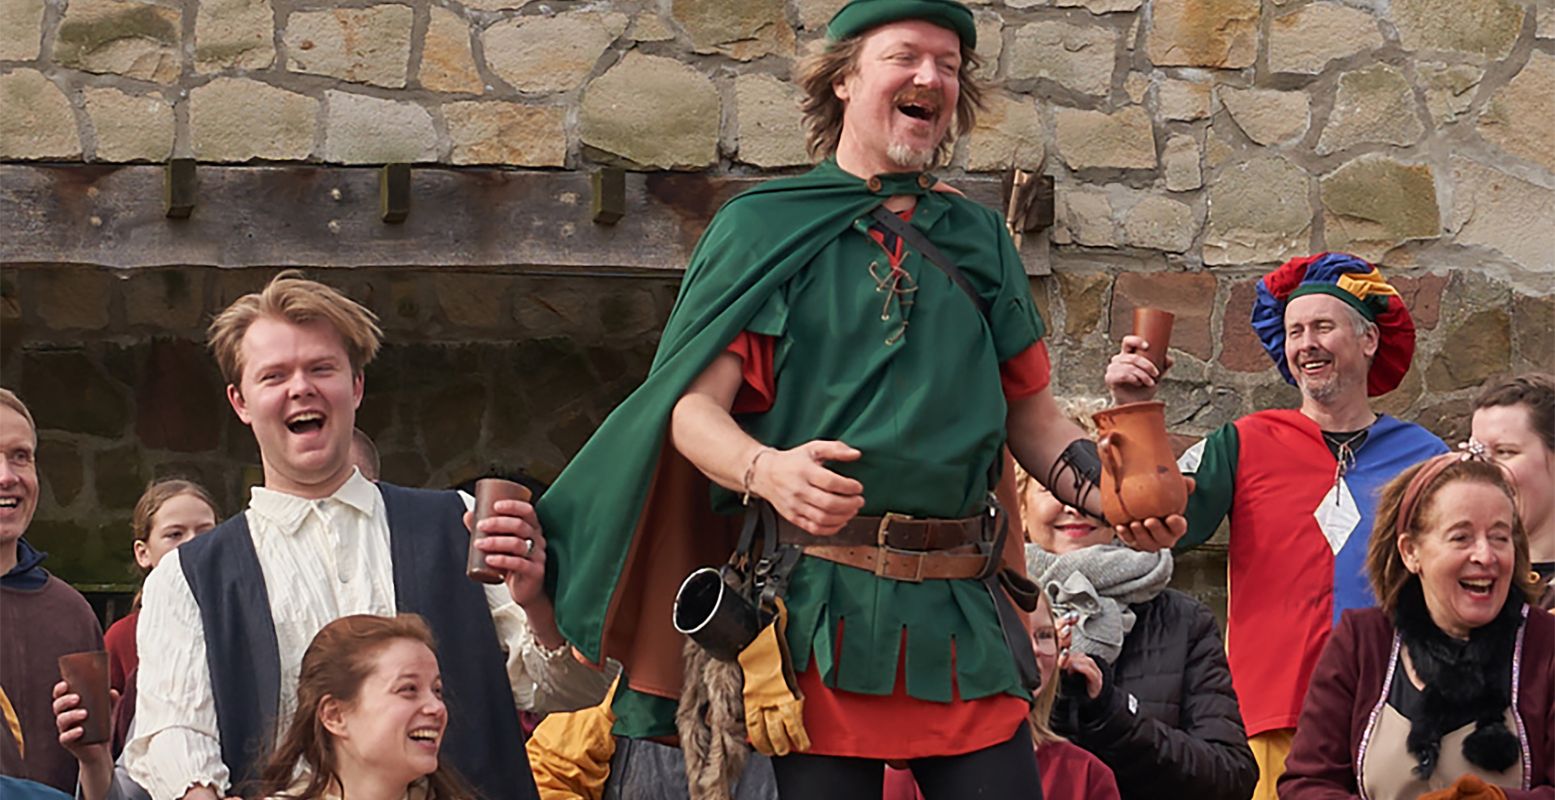 Ontmoet Robin Hood en zijn merry men in Hertme, tijdens een vrolijke voorstelling die overal om je heen plaatsvindt in een middeleeuws dorpje. Foto: Openluchttheater Hertme